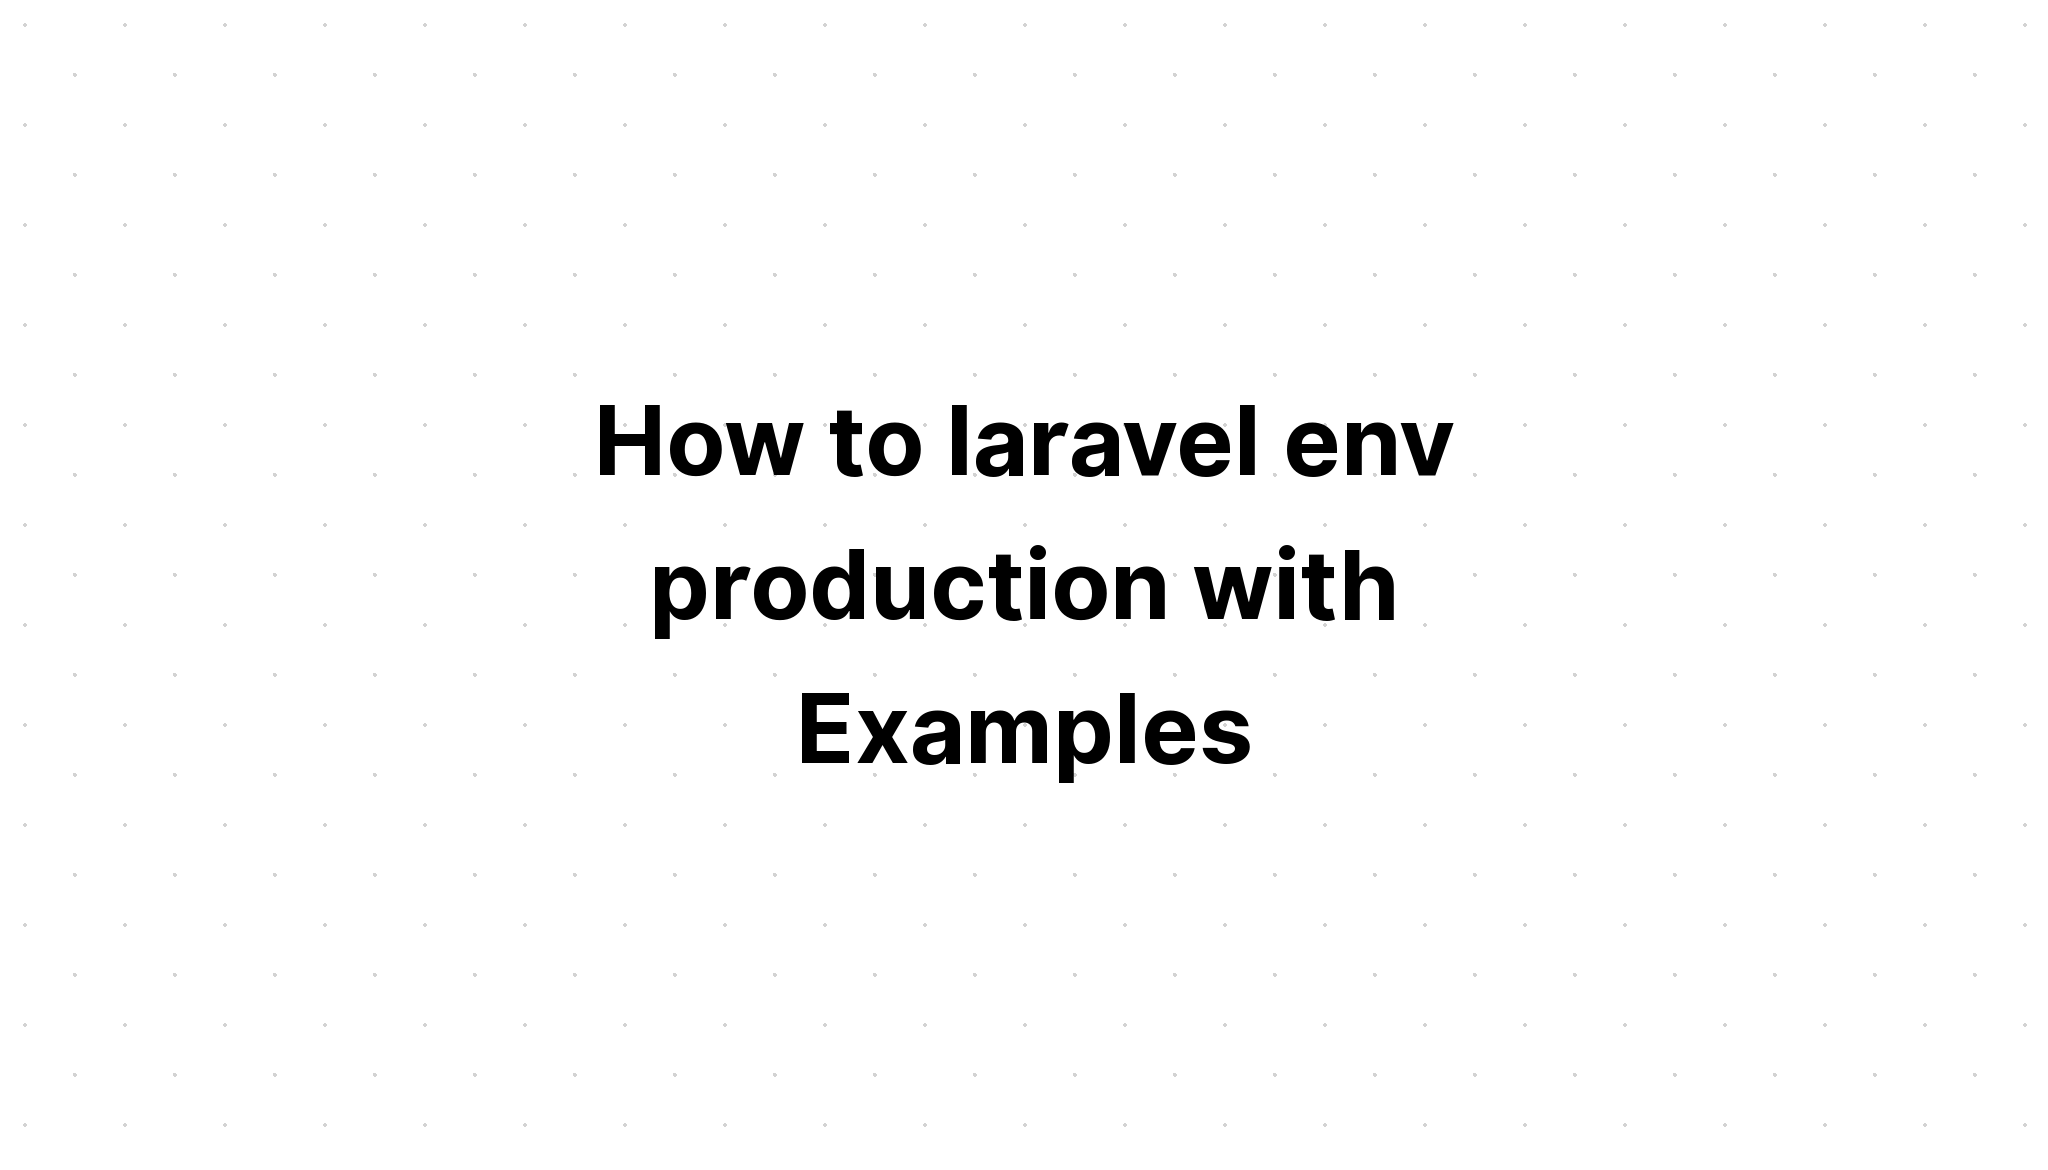 Làm thế nào để sản xuất laravel env với các ví dụ